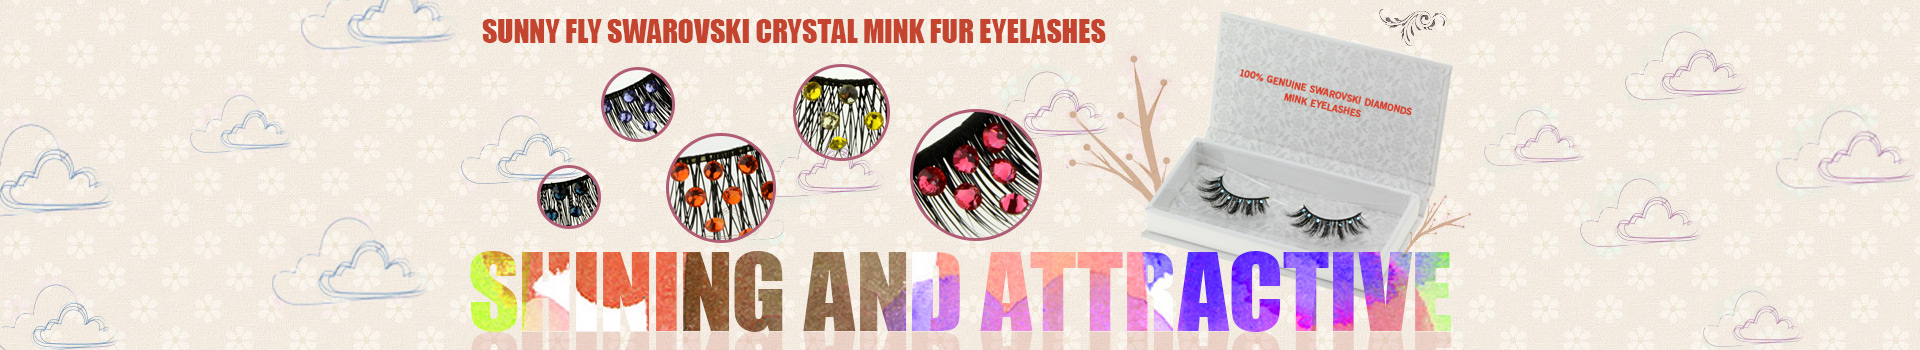 Swarovski Crystal Mink Fur Eyelashes MS14